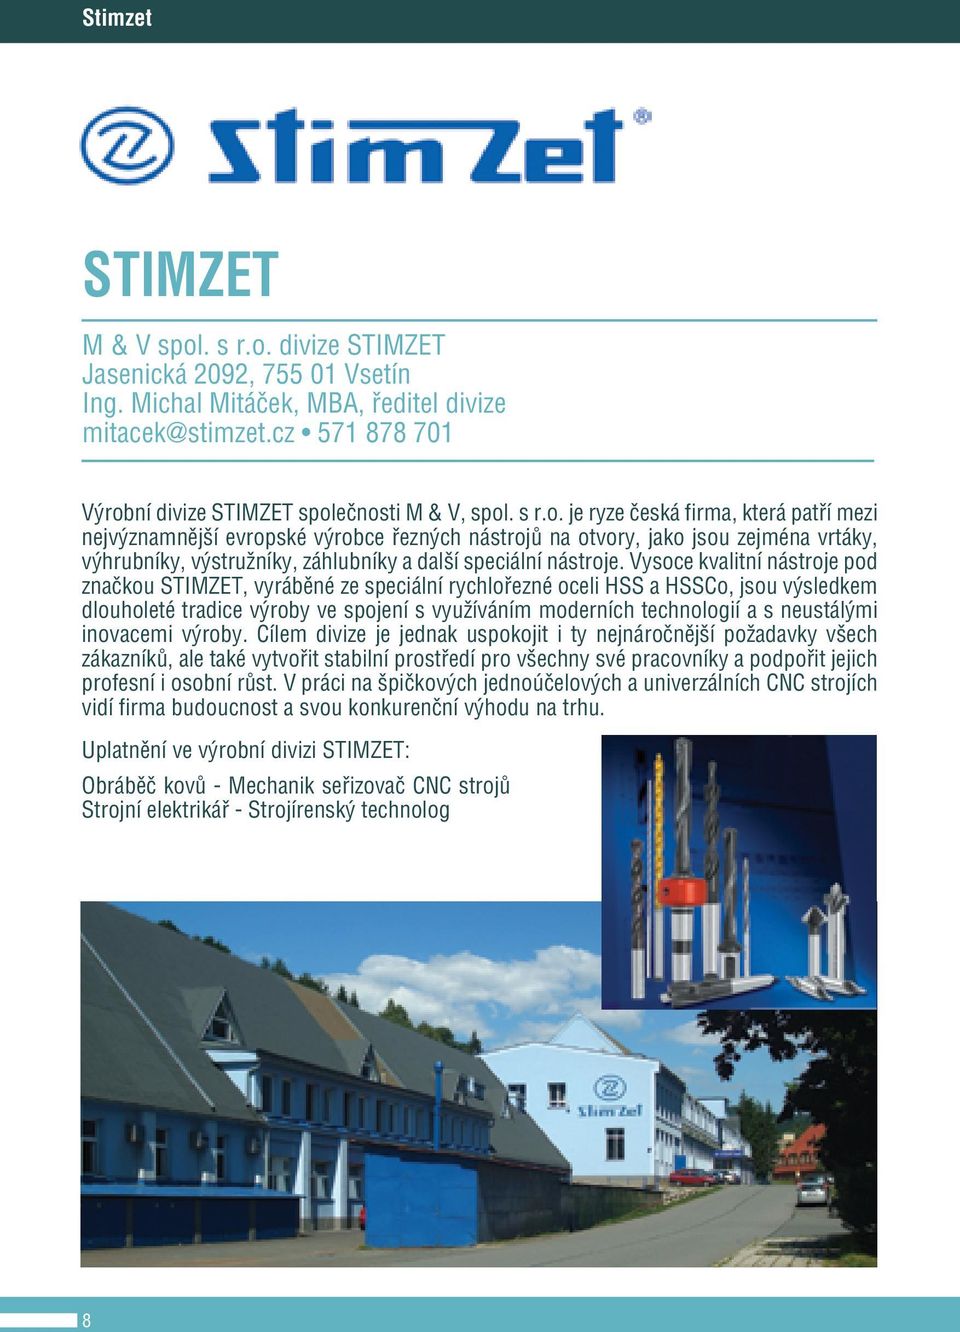 Vysoce kvalitní nástroje pod značkou STIMZET, vyráběné ze speciální rychlořezné oceli HSS a HSSCo, jsou výsledkem dlouholeté tradice výroby ve spojení s využíváním moderních technologií a s